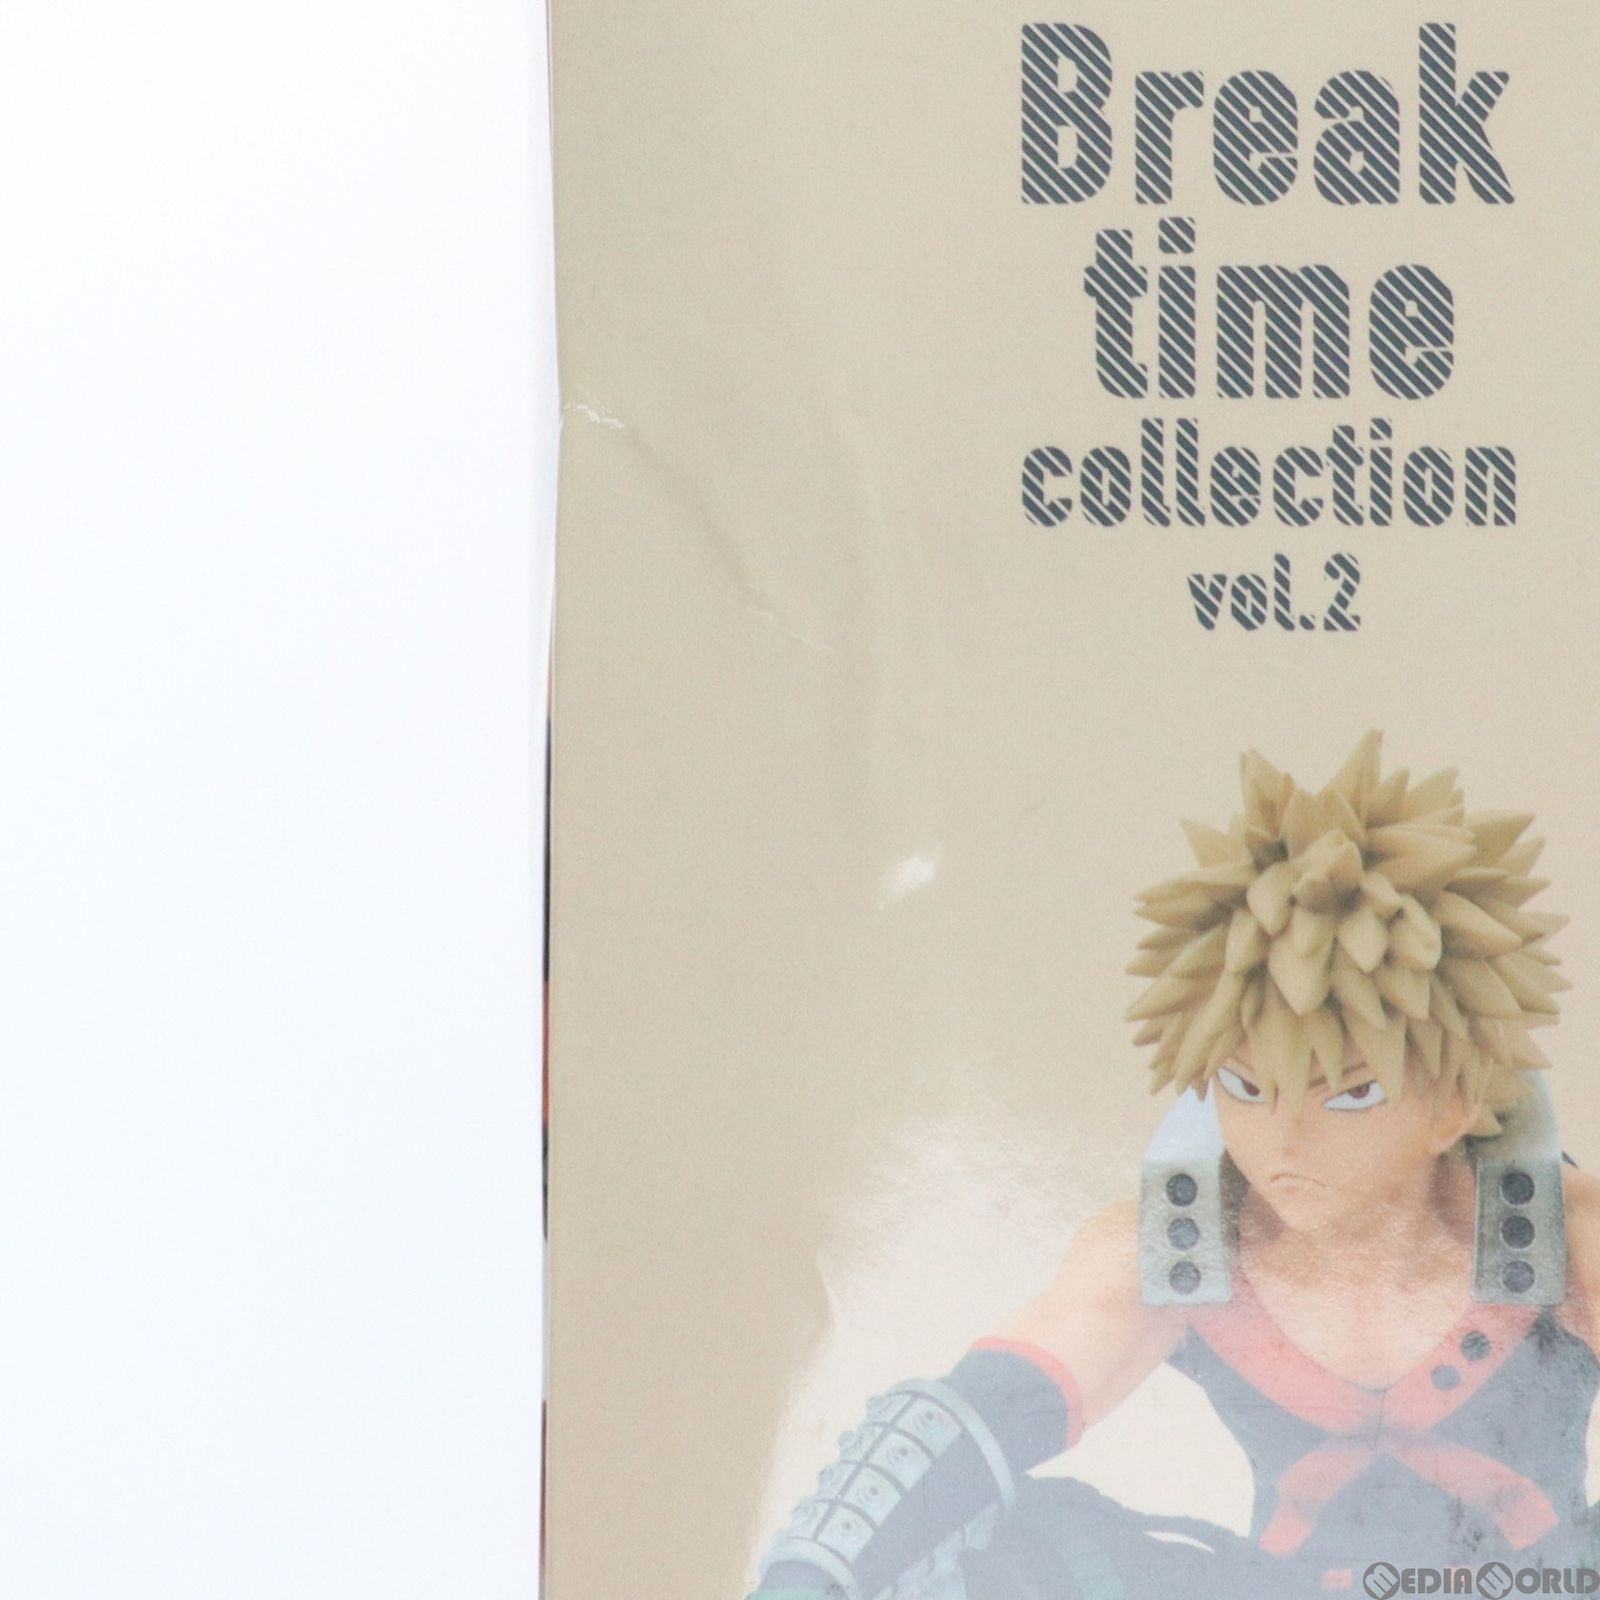 爆豪勝己(ばくごうかつき) 僕のヒーローアカデミア Break time collection vol.2 フィギュア プライズ(2595038)  バンプレスト